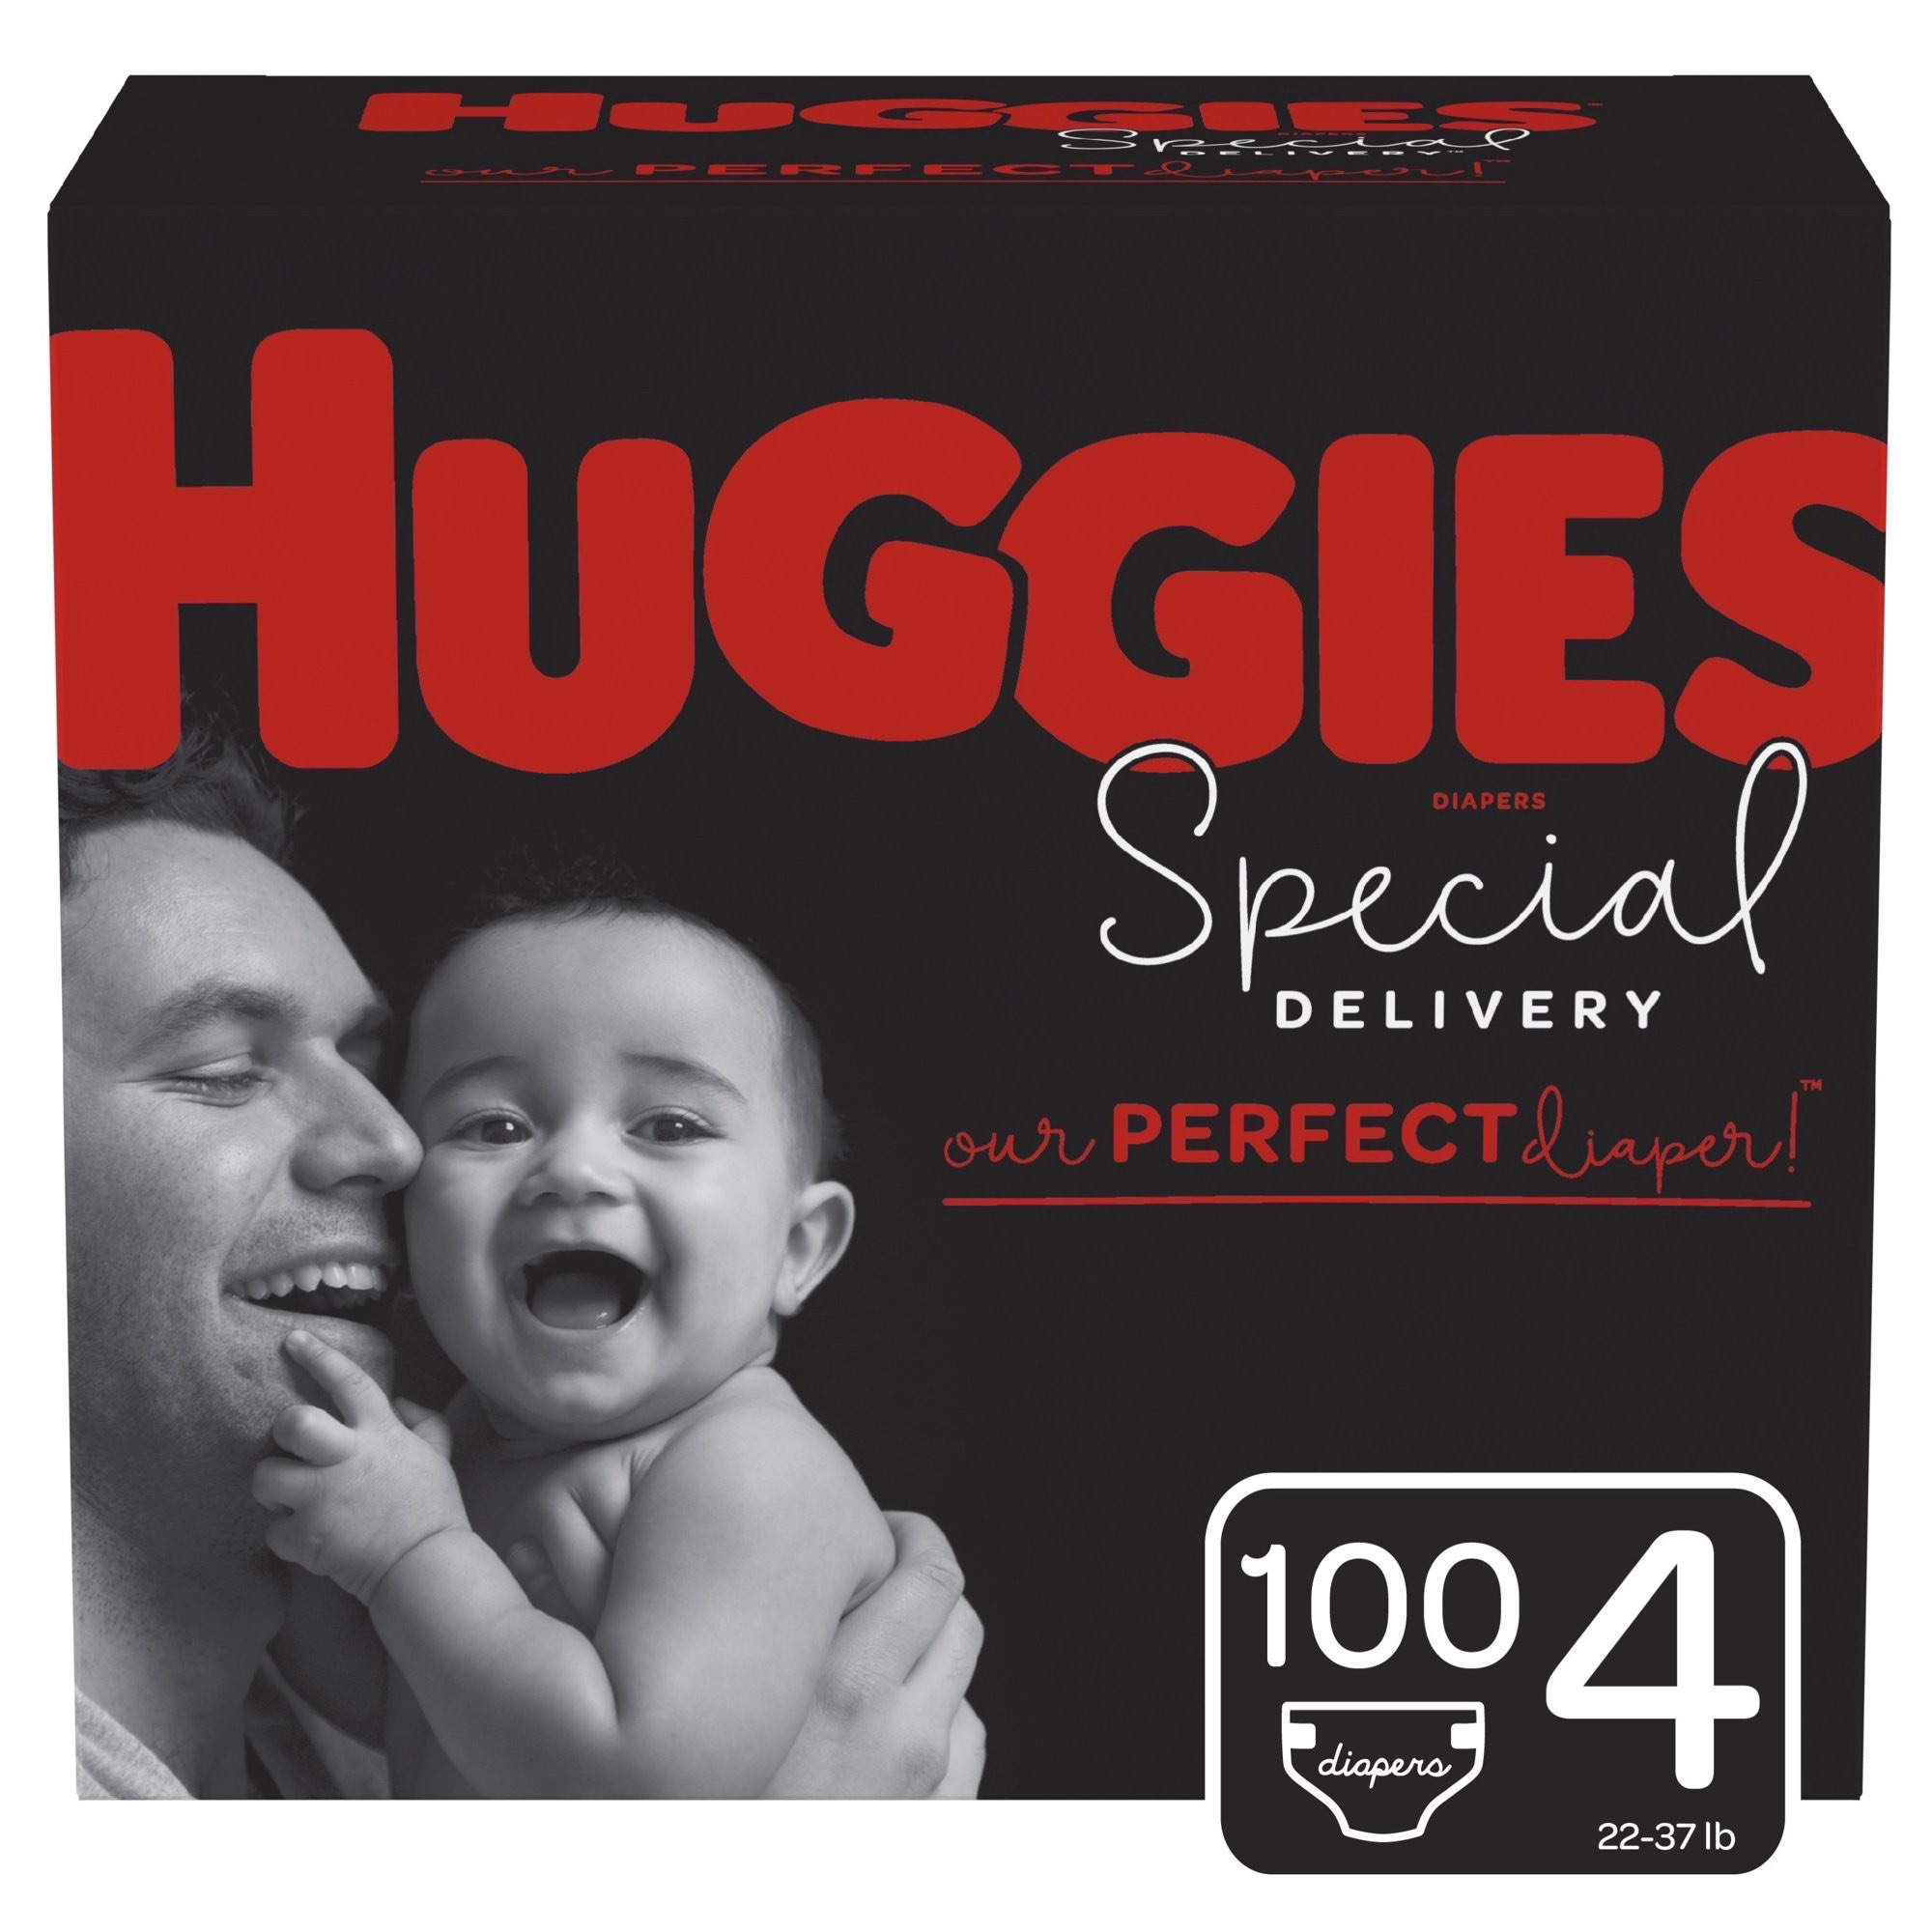 尿布濕Huggies Special Delivery Hypoallergenic Baby Diapers, Size 4, 100 Ct, One Month Supply - Walmart.com - Walmart.com